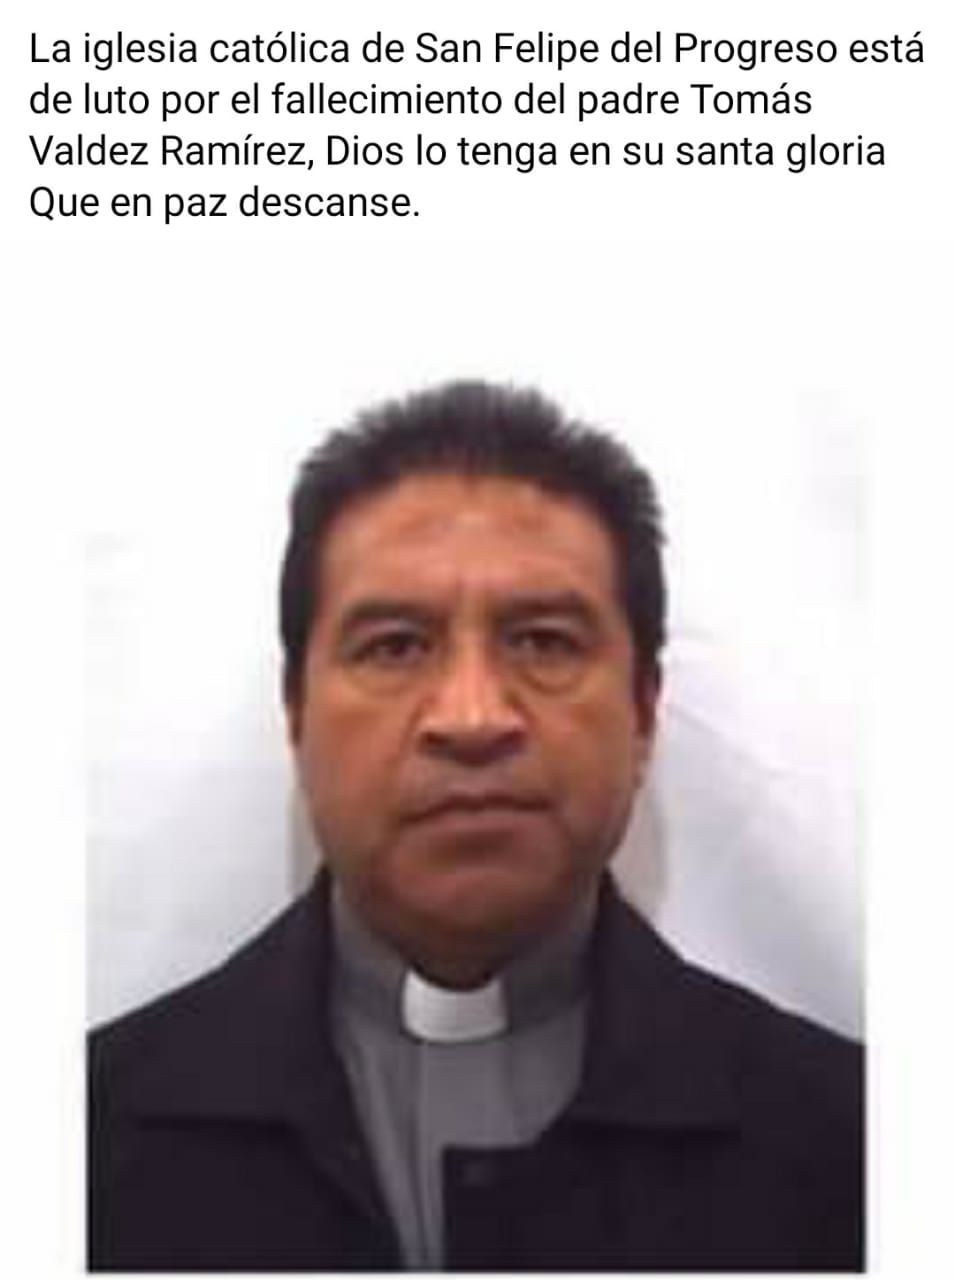 #Falleció sacerdote de San Felipe del Progreso